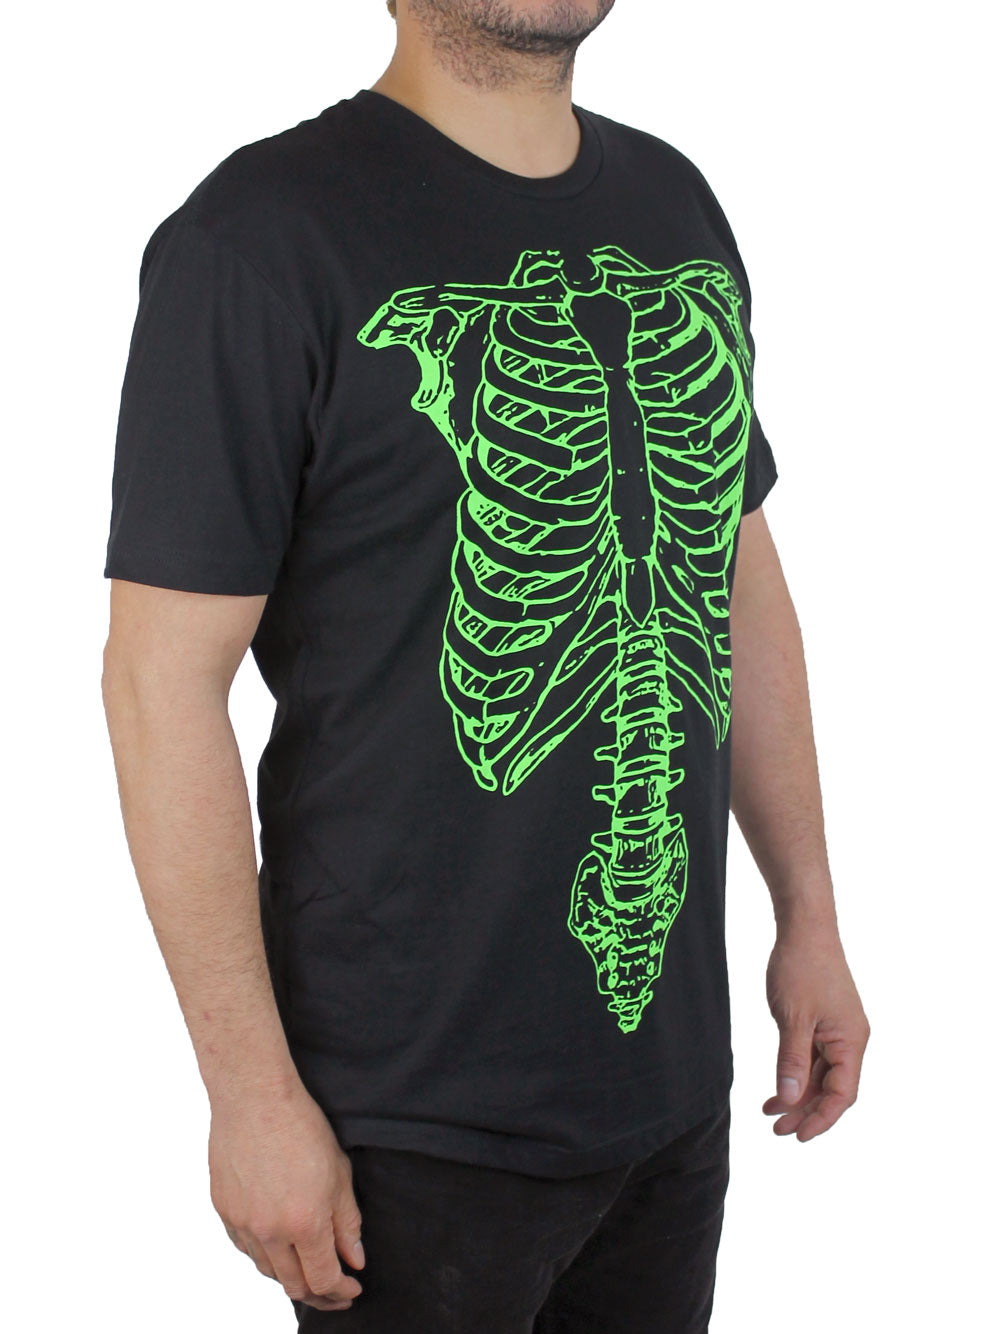 Green Skeleton Shirt 3/4 View